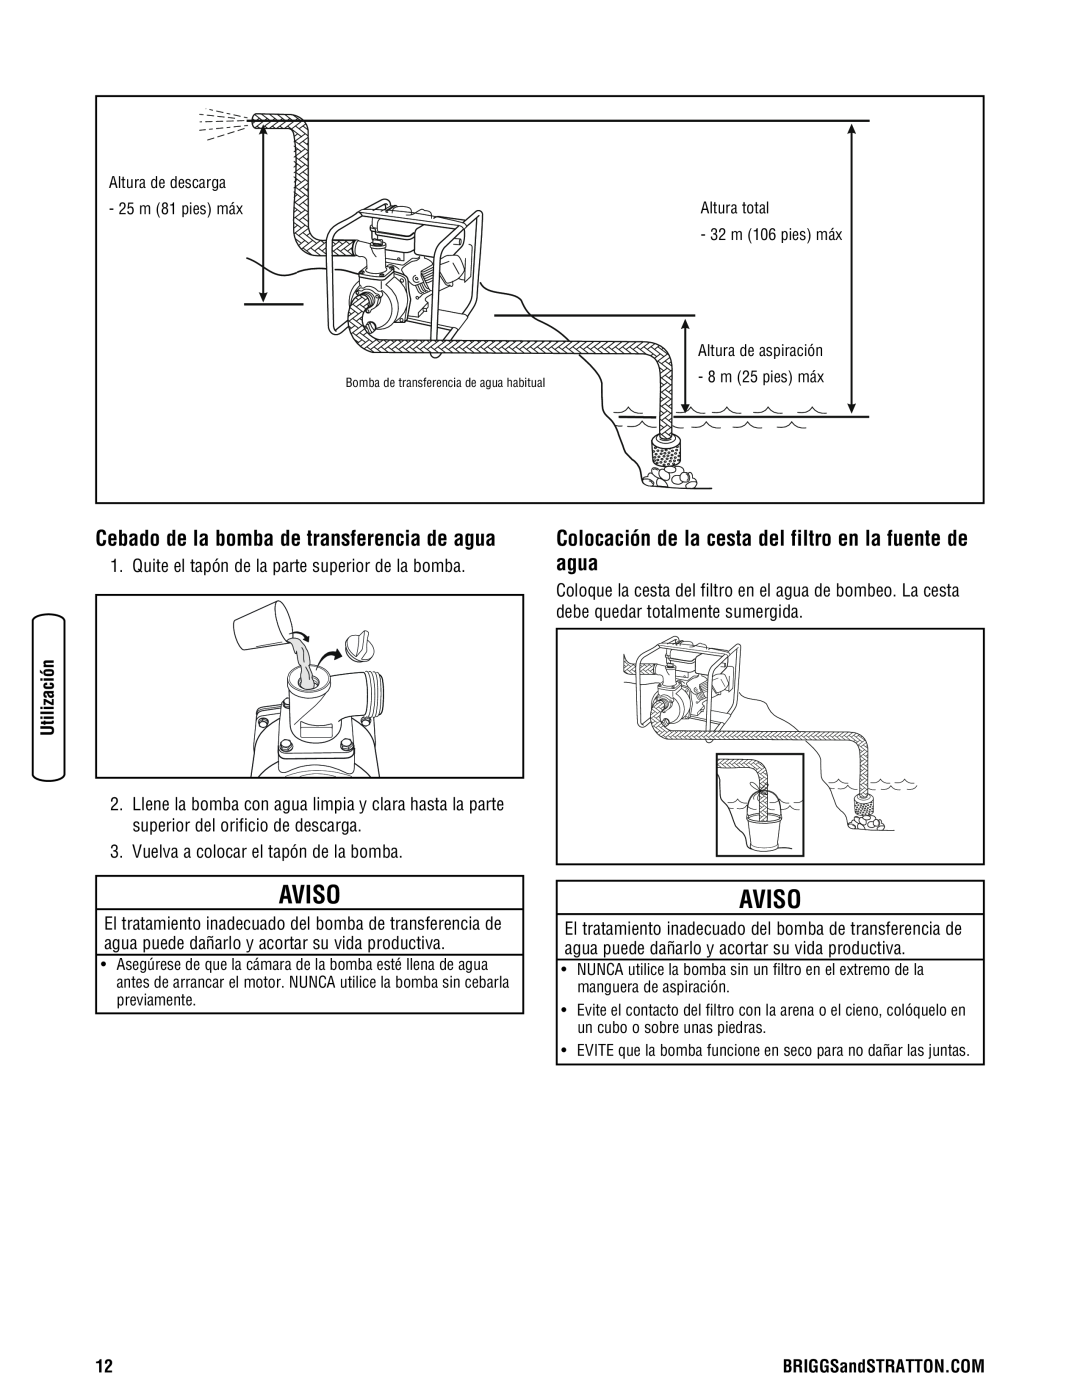 Briggs & Stratton Water Transfer Pump manual Colocación de la cesta del filtro en la fuente de agua, Aviso 